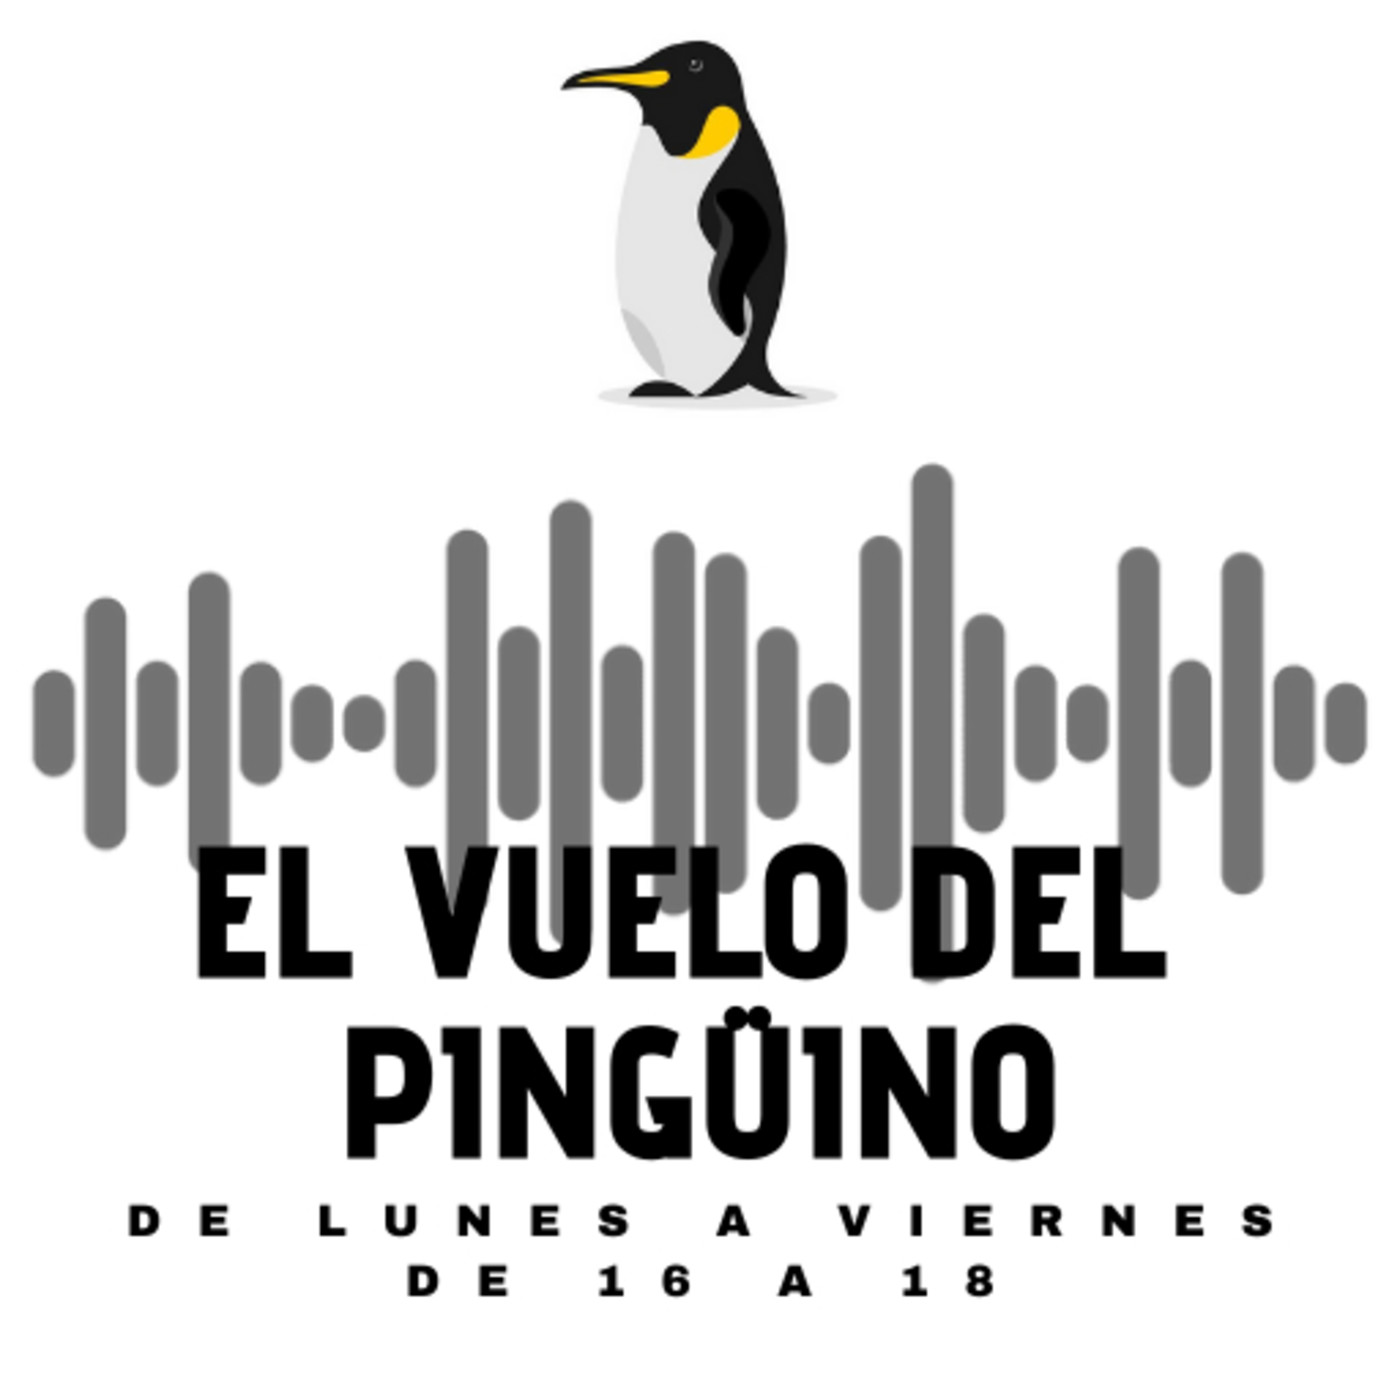 El vuelo del Pingüino - Jueves - Actualidad, humor, cultura y música - 04-03-2021